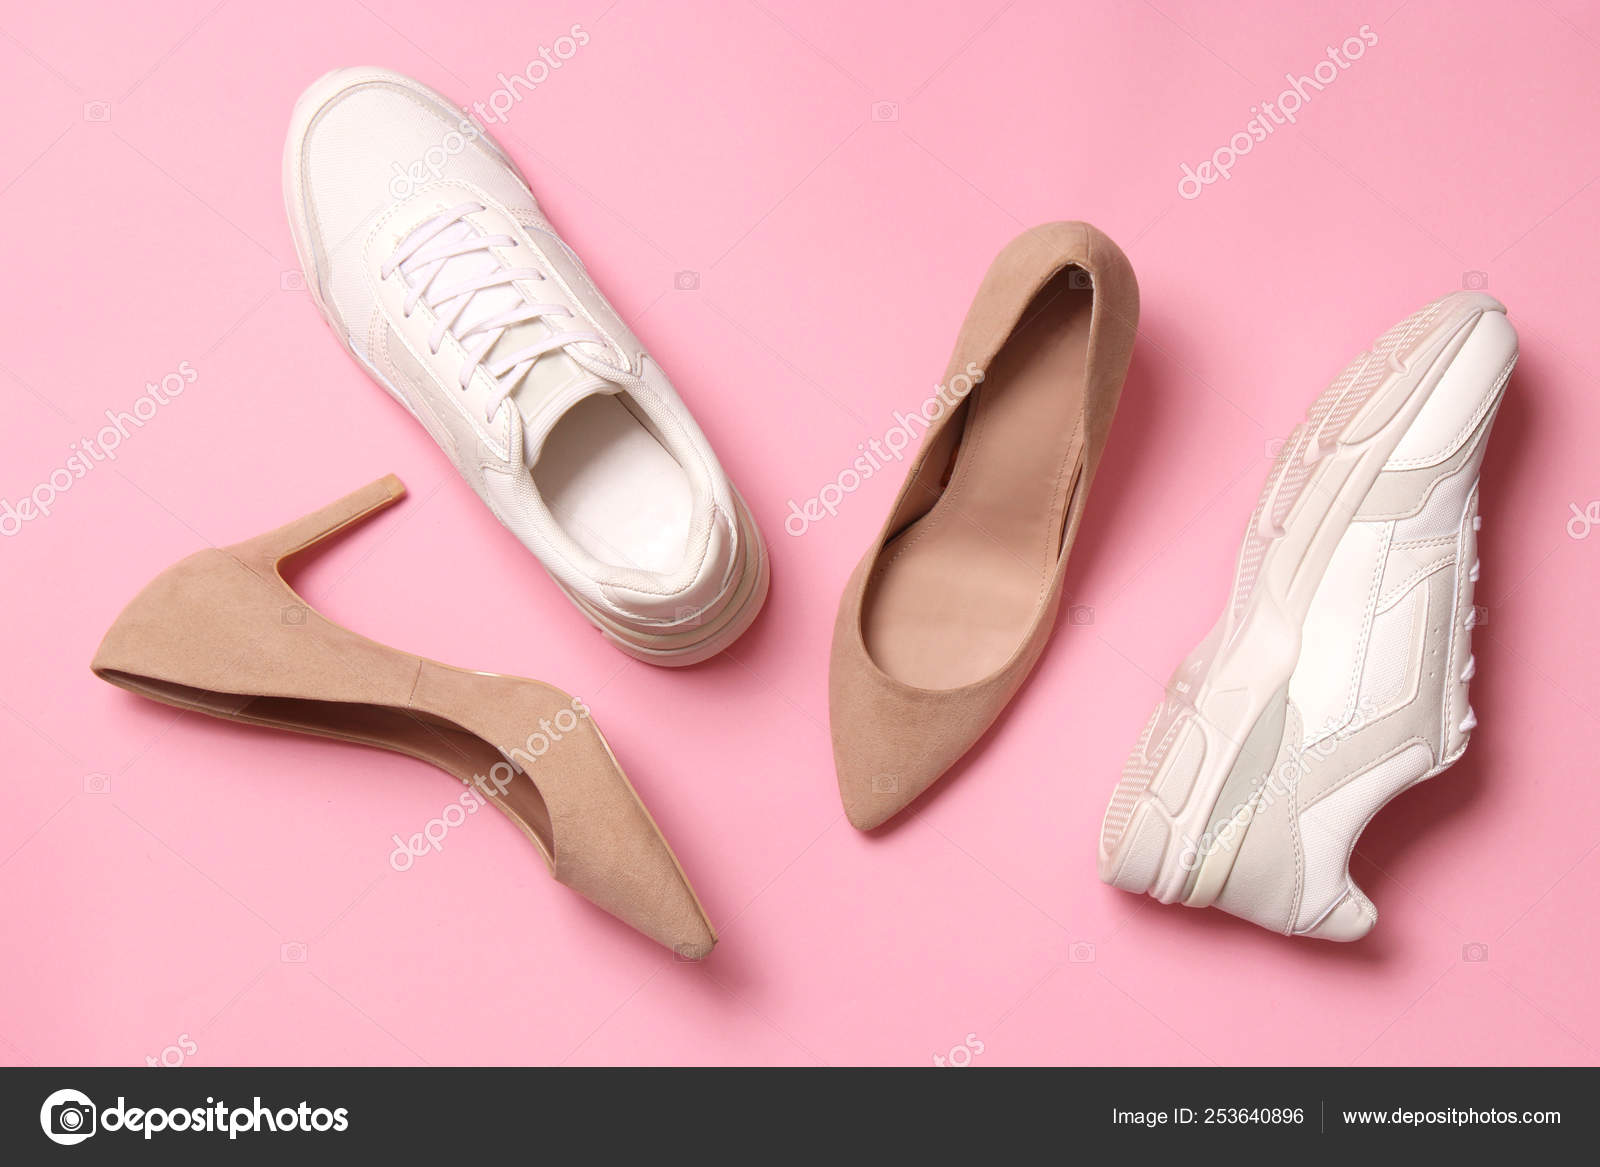 women's sneakers with high heel